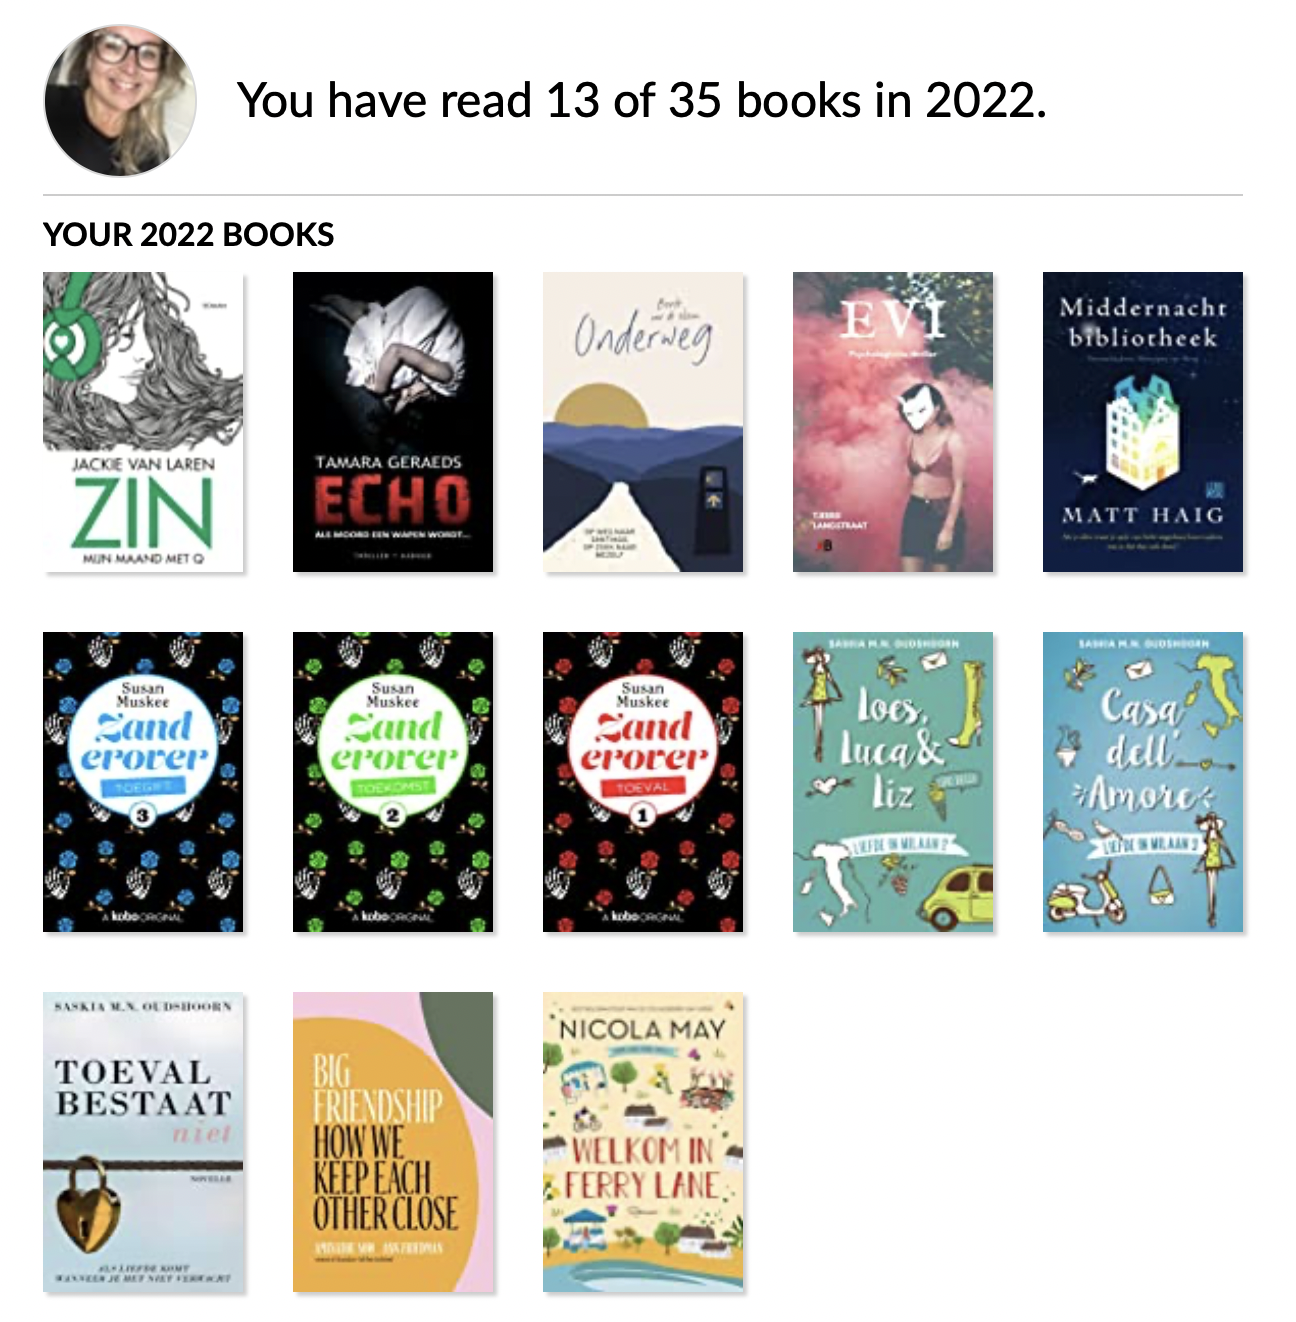 Boeken gelezen in 2022 #2 (13/35)